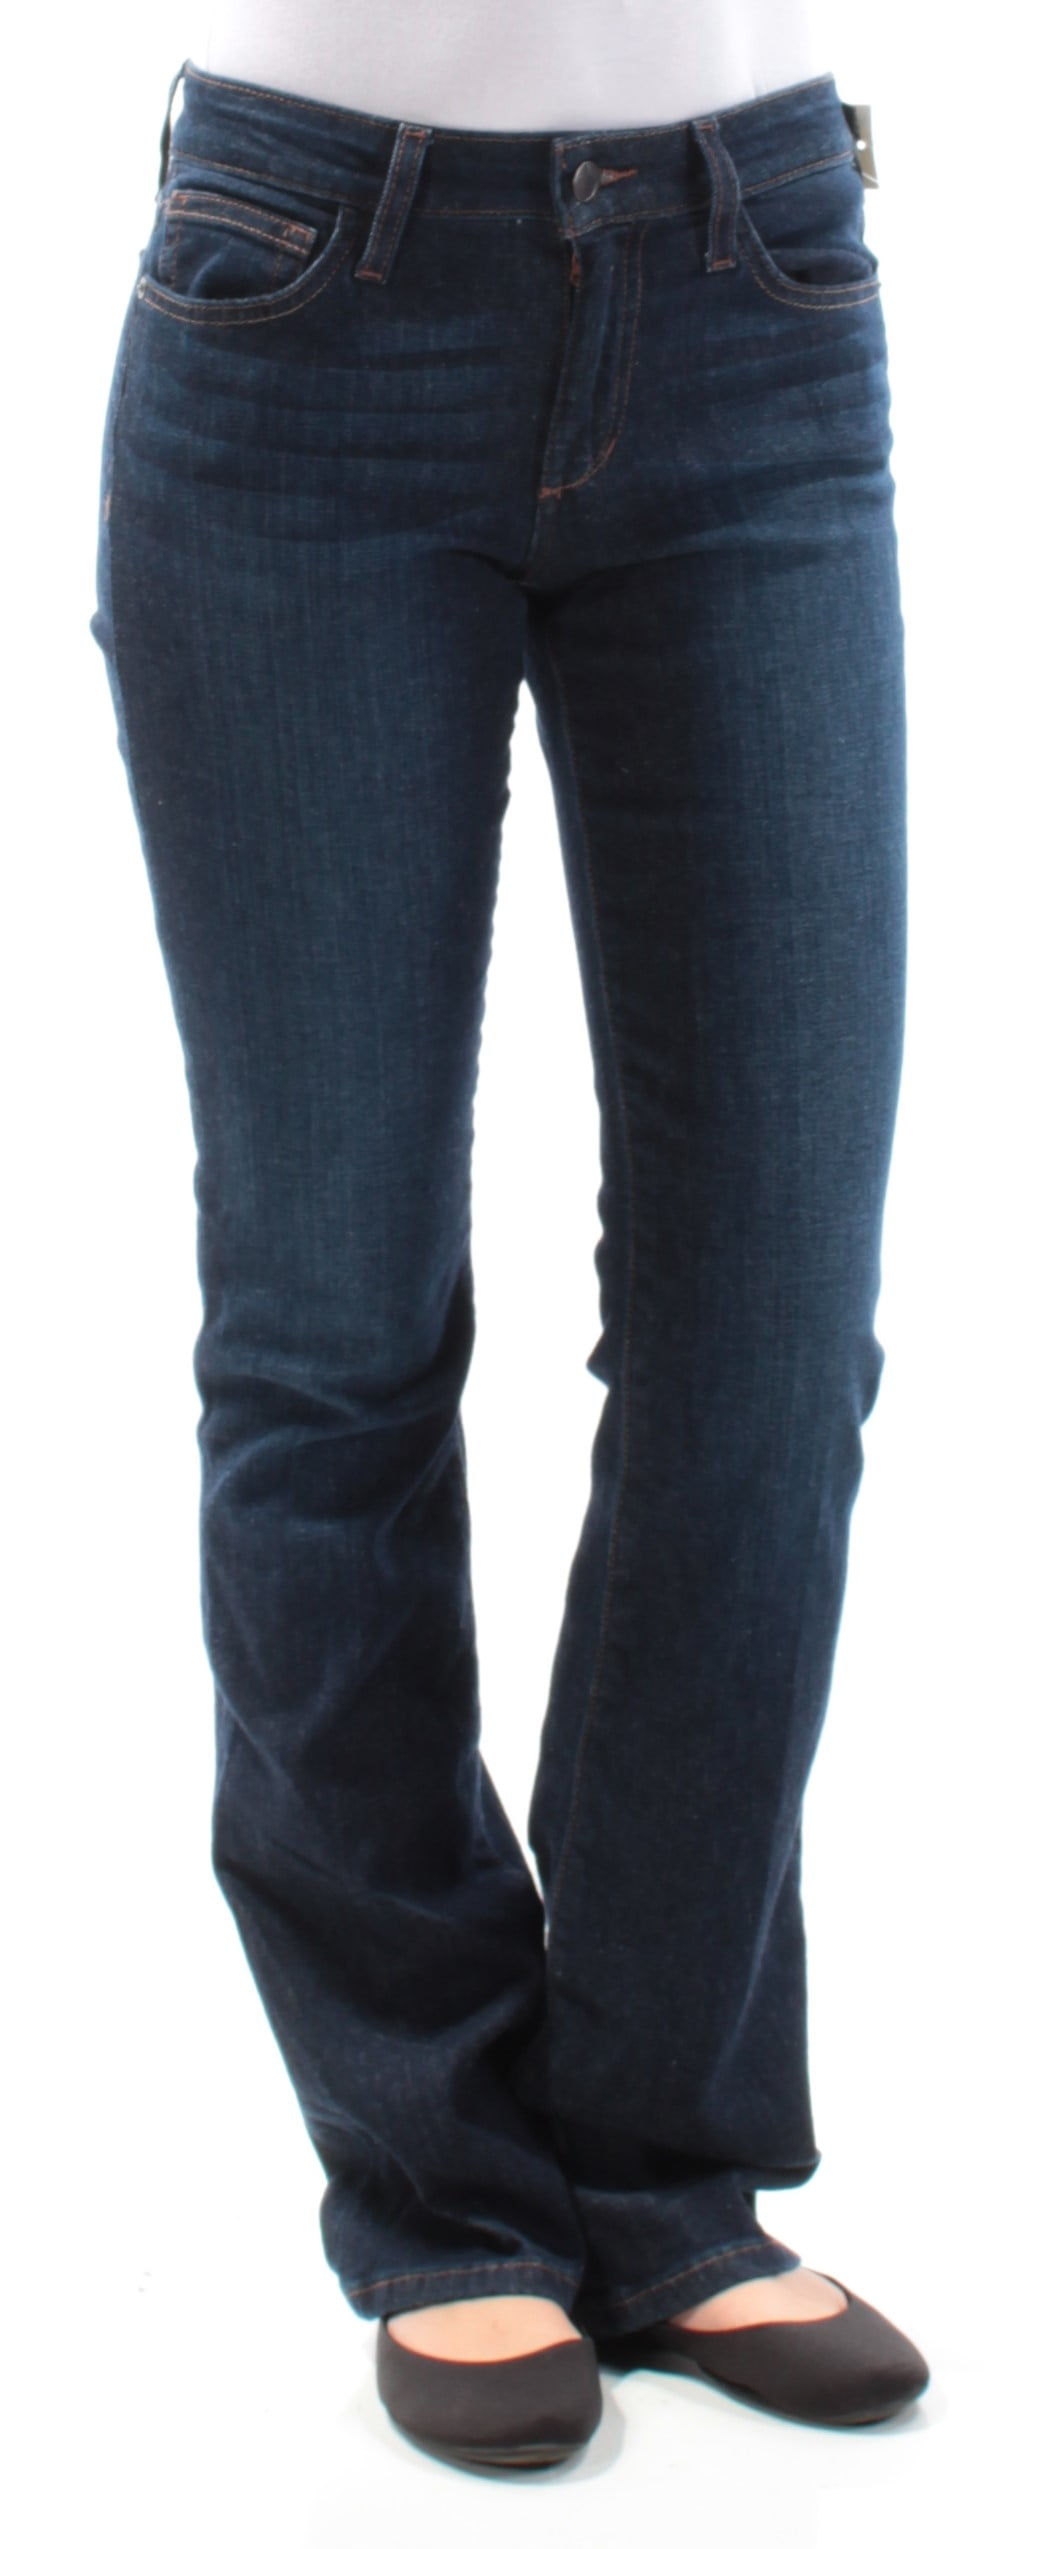 JOE'S Jeans - JOE'S Womens Blue Curvy Boot Cut Jeans Size: 26 Waist ...